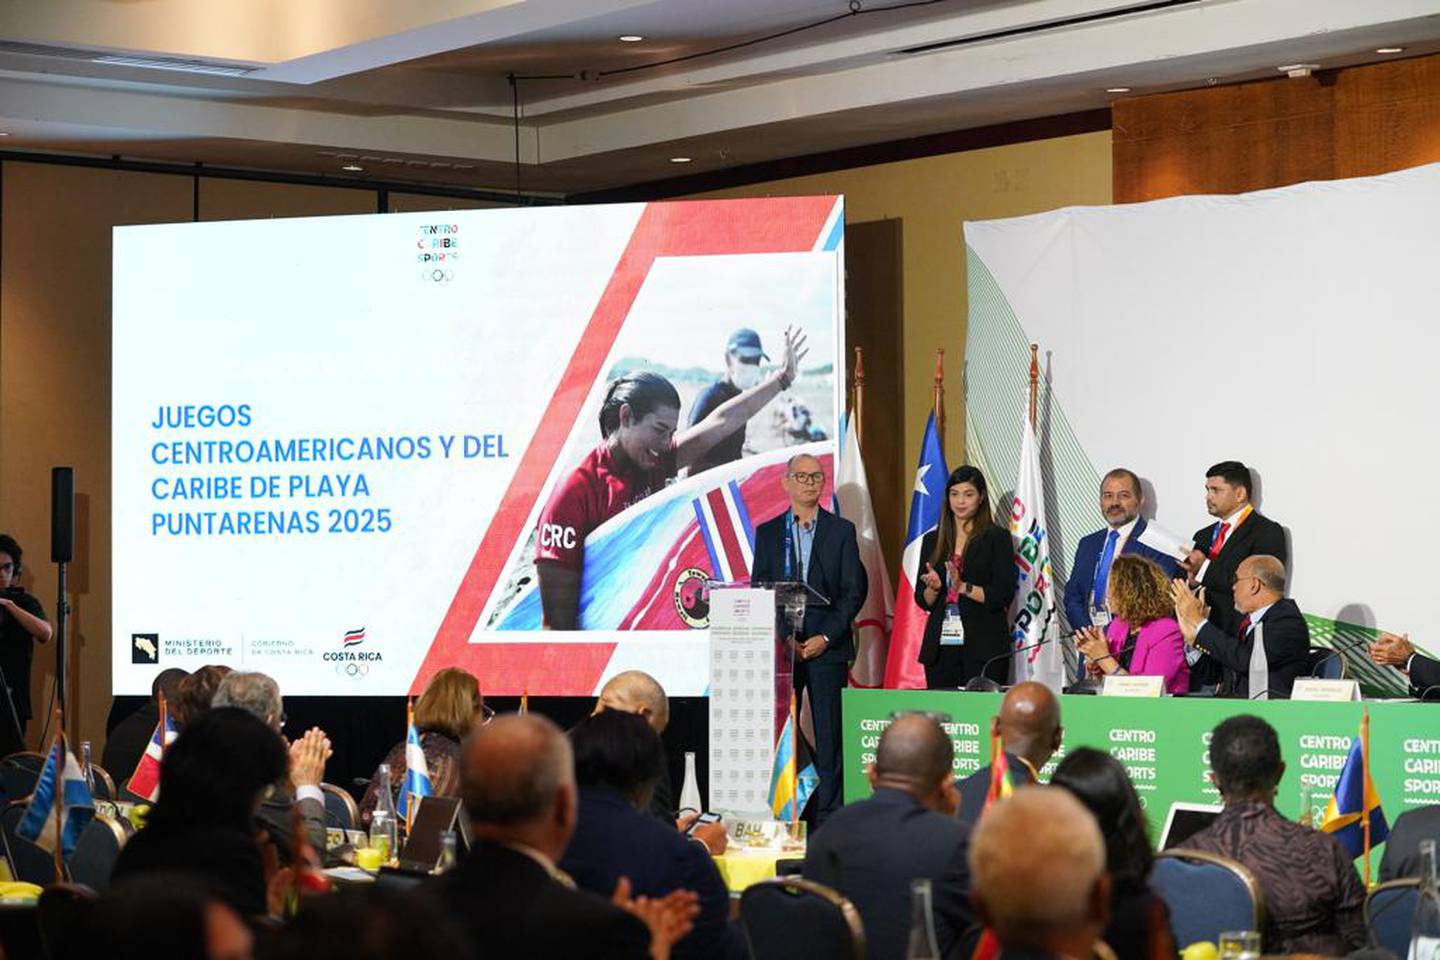 Este fue el momento en el que se le concedió a Costa Rica la sede de los próximos Juegos Centroamericanos y del Caribe de Playa que serán en Puntarenas en 2025.